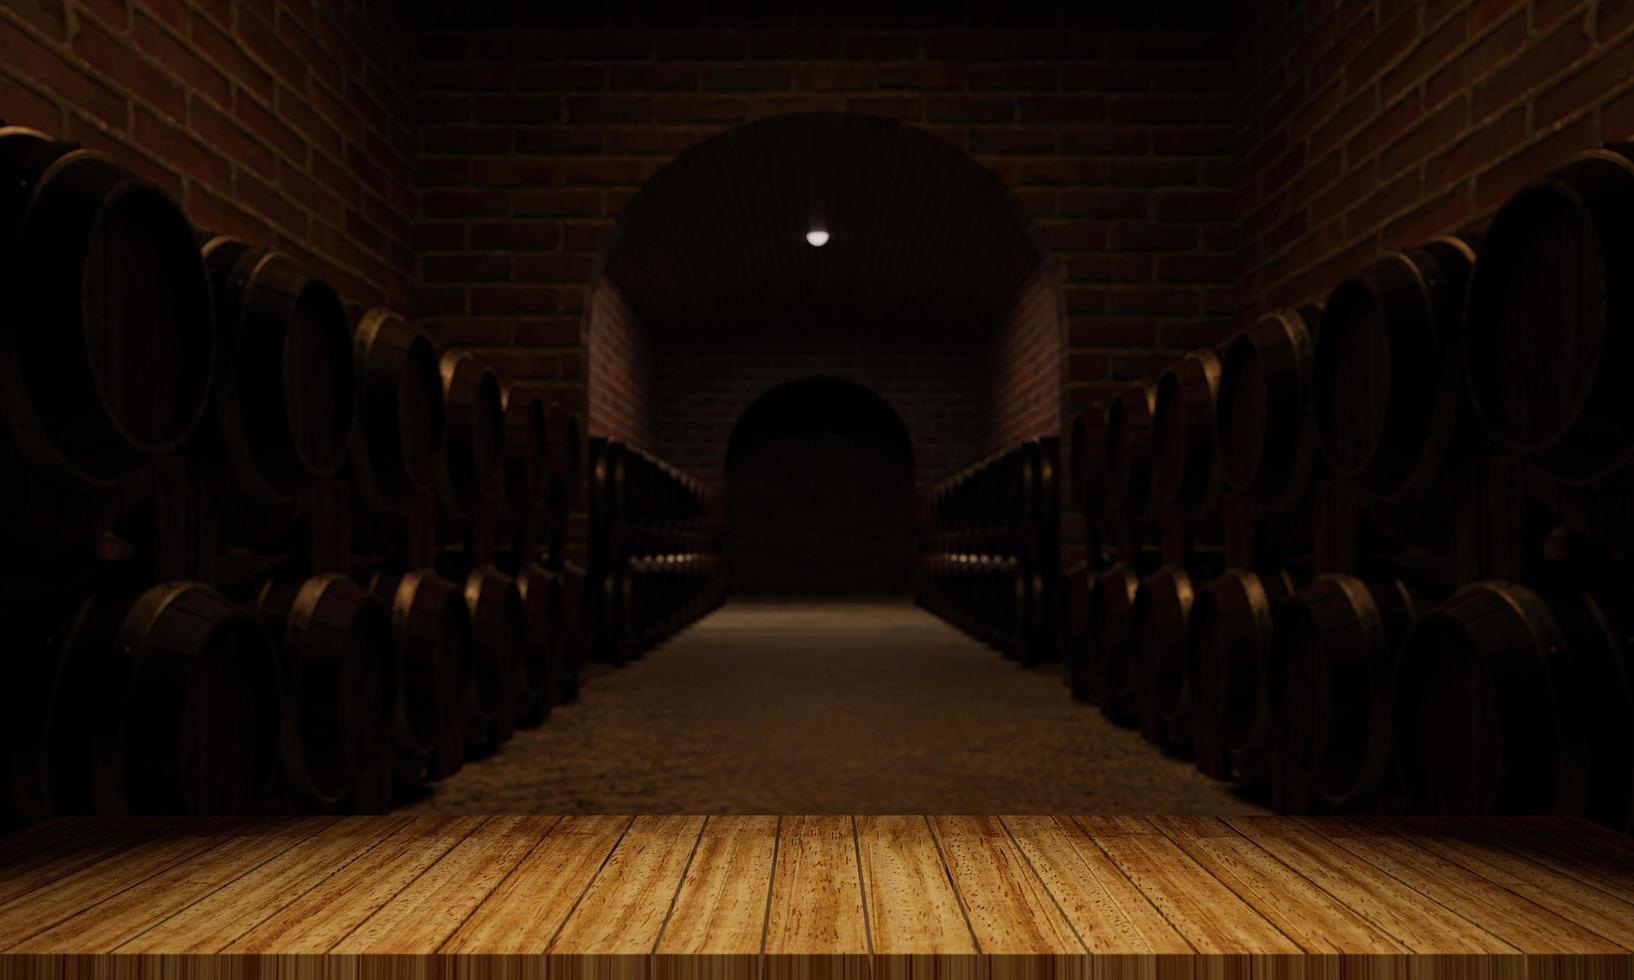 fûts en bois pour la fermentation du vin. pièce pour stocker plusieurs cuves de fermentation de vin. le mur de briques est rouge-orangé. rendu 3d photo